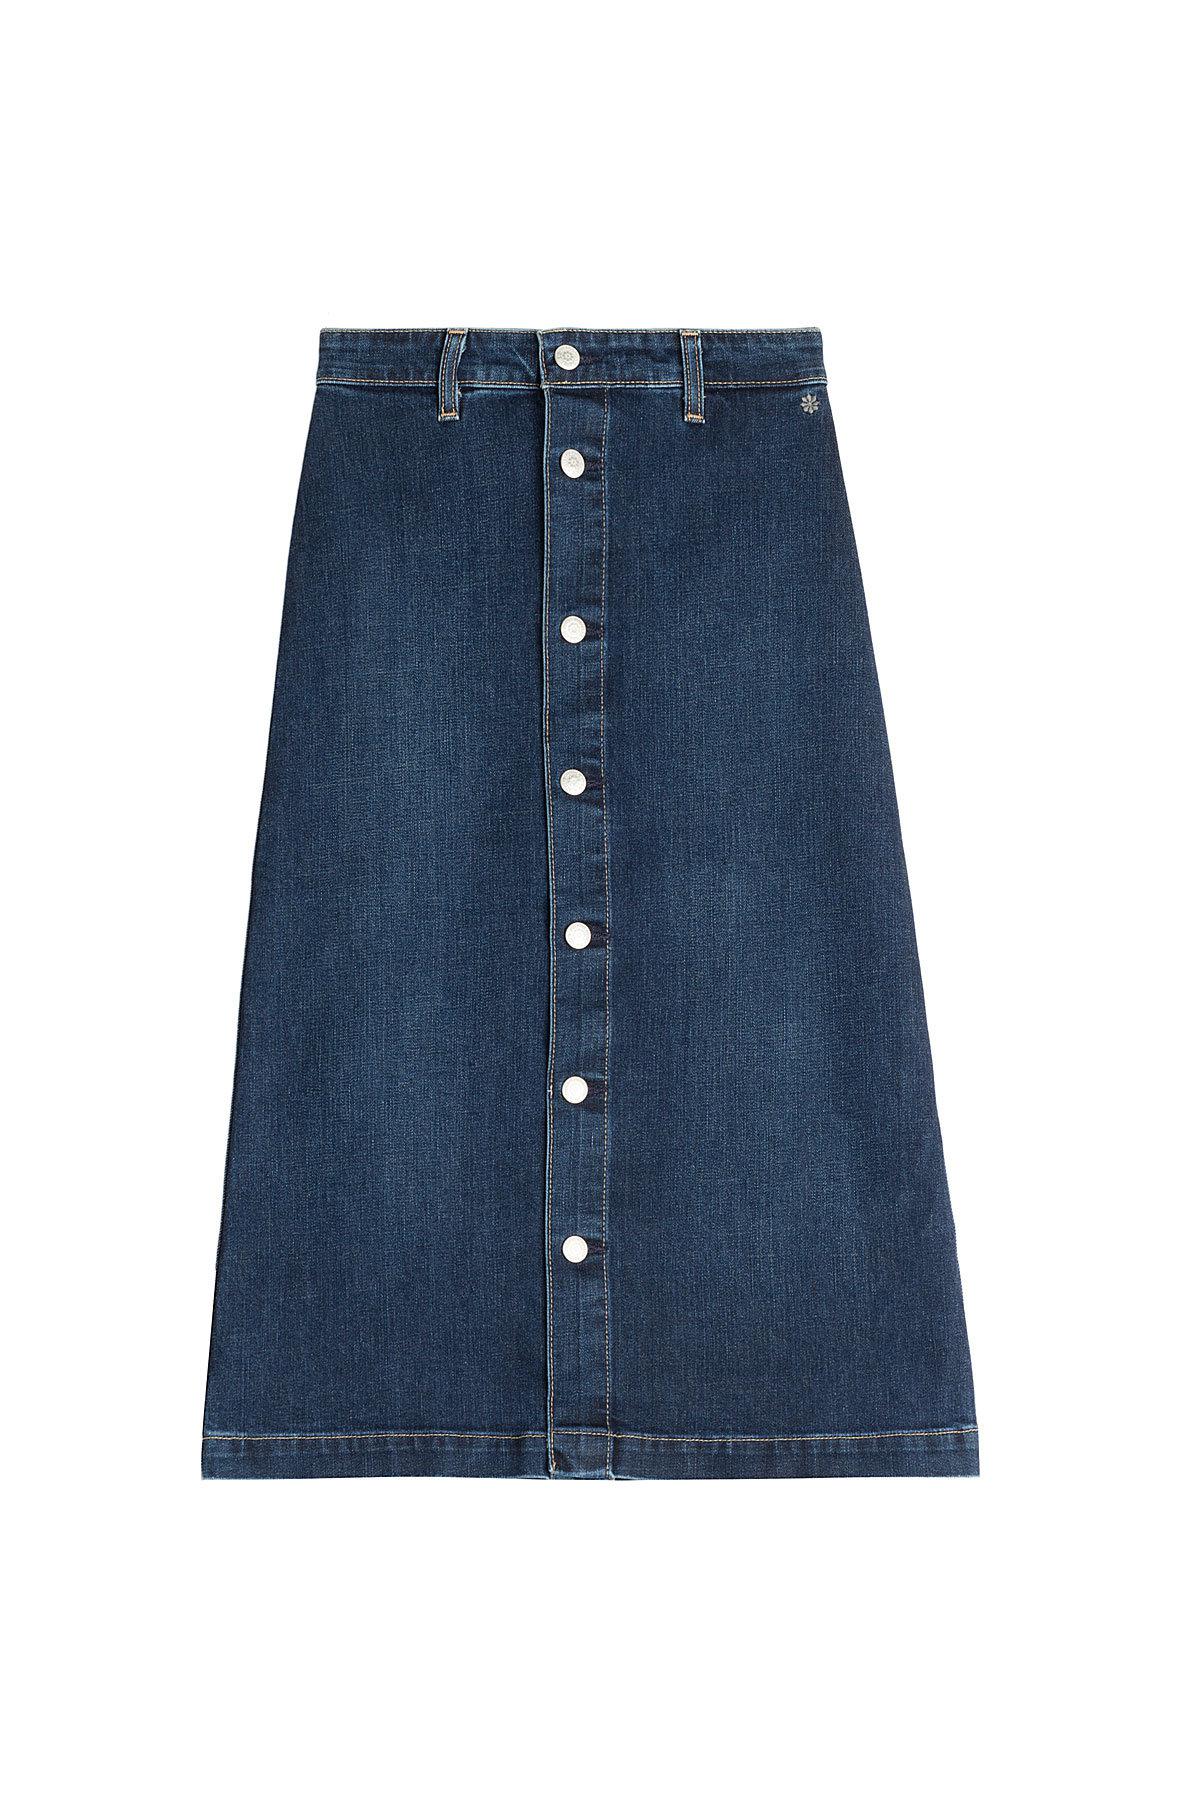 AG Jeans Cool Denim Skirt in Blue - Lyst